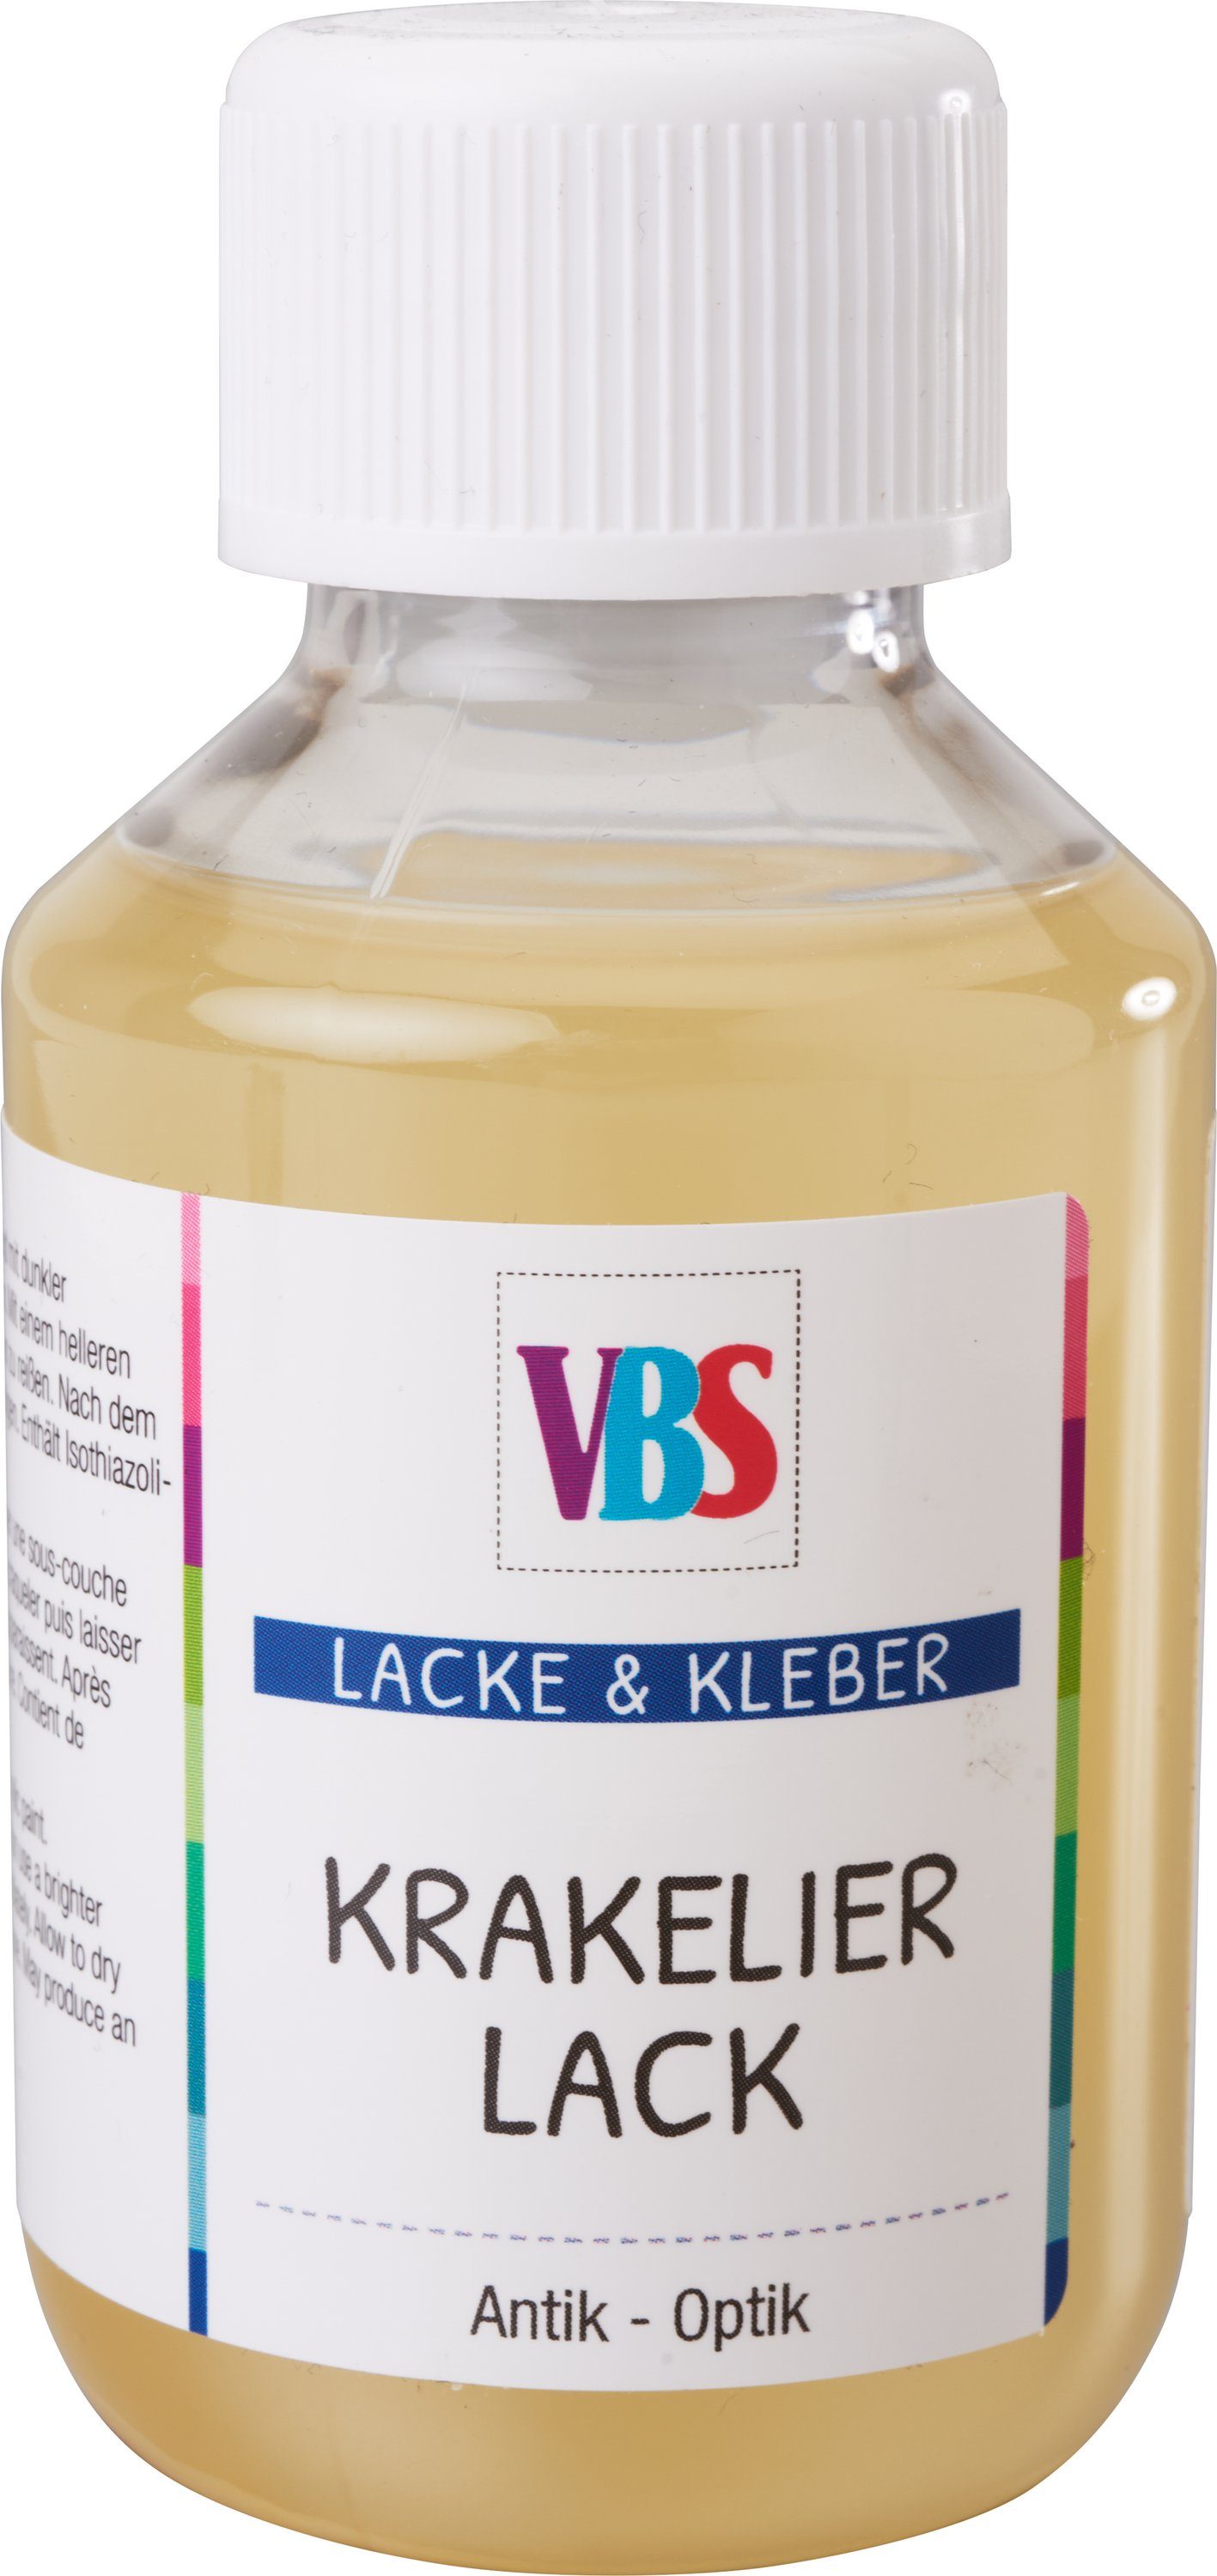 VBS Lack Krakelier-Lack, hochpigmentiert | Lacke